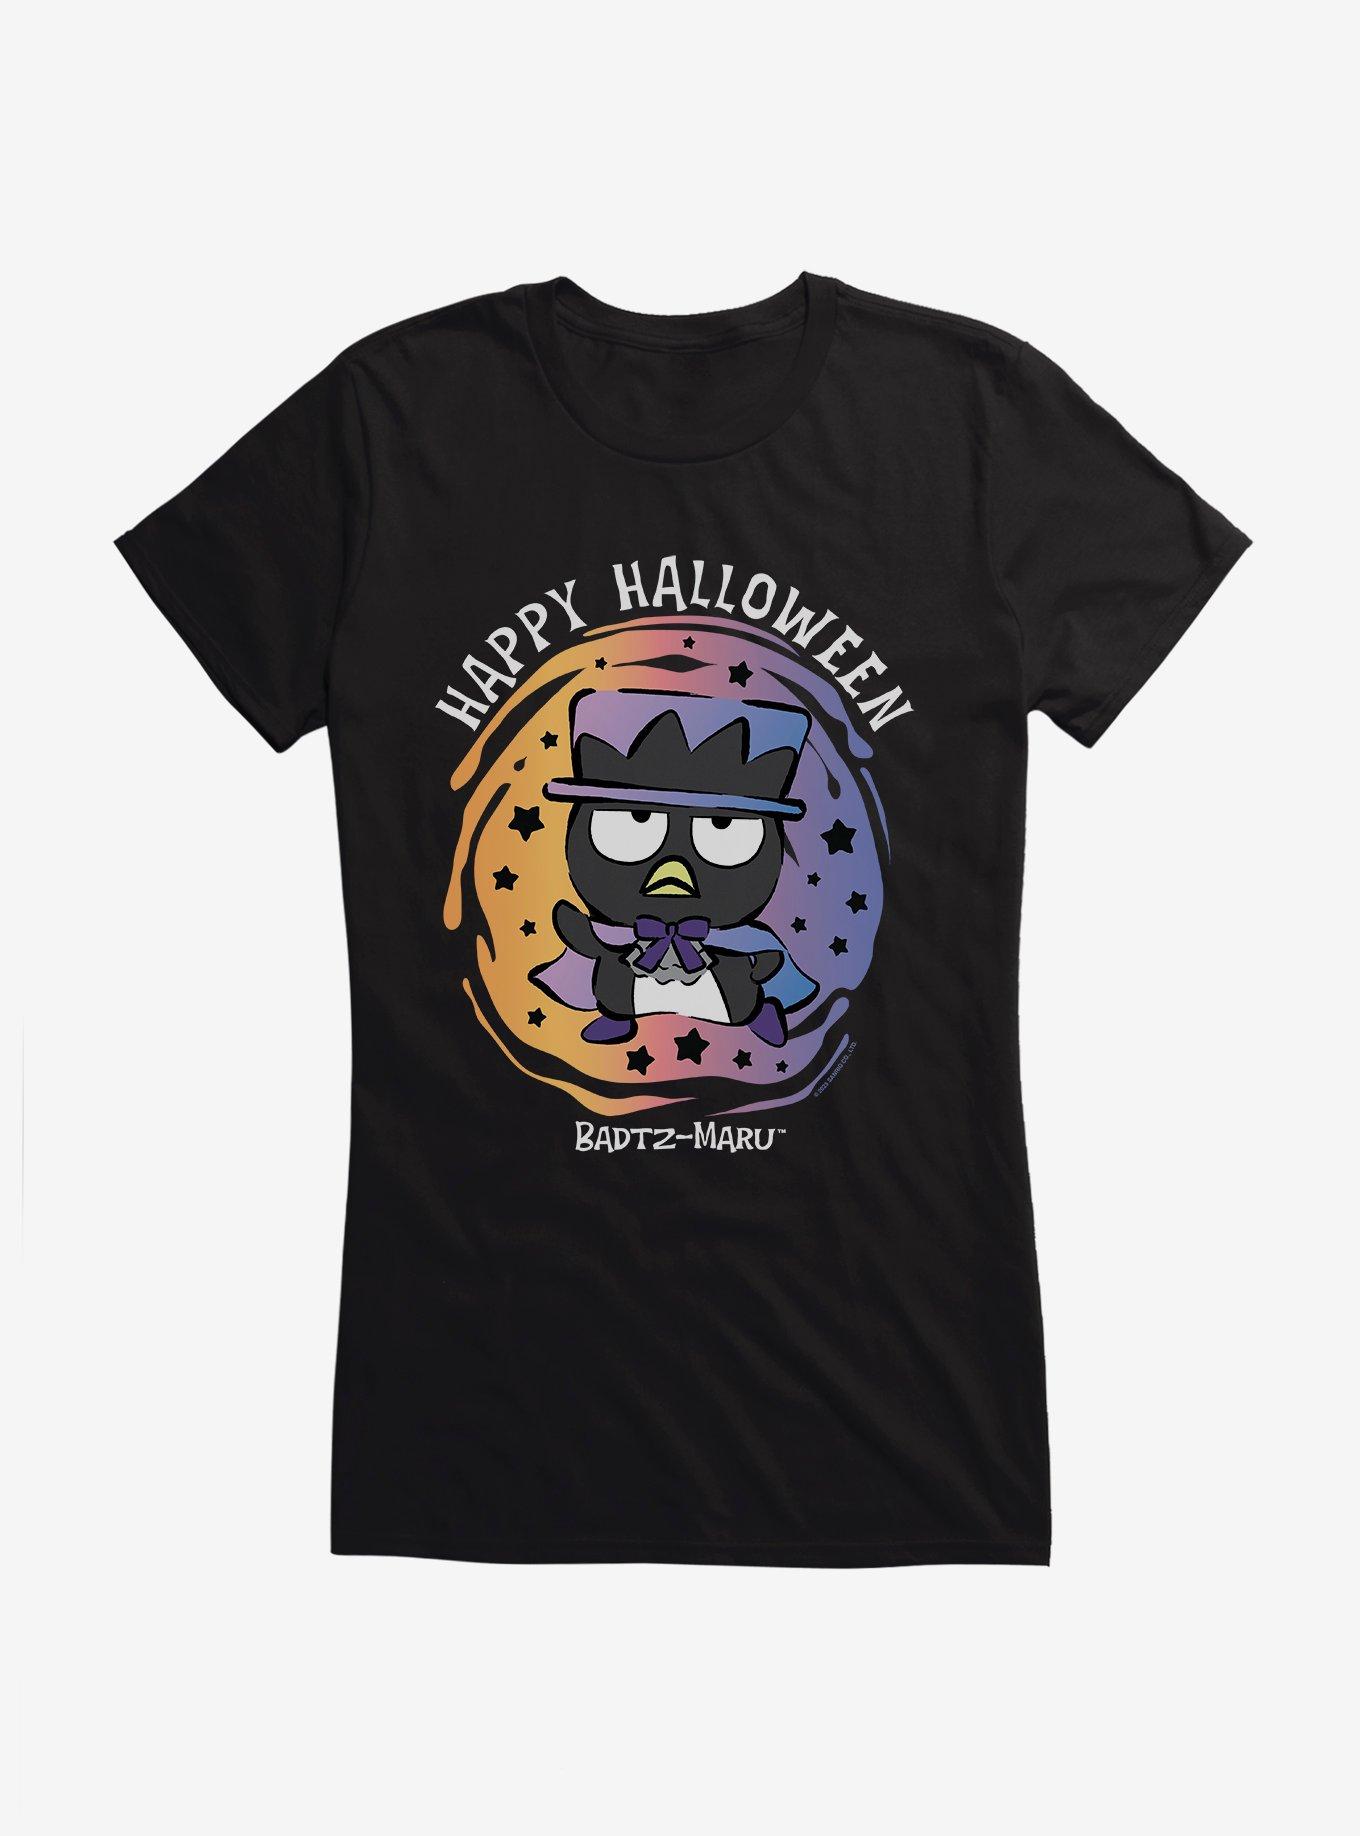 Badtz-Maru Magician Costume Girls T-Shirt, BLACK, hi-res